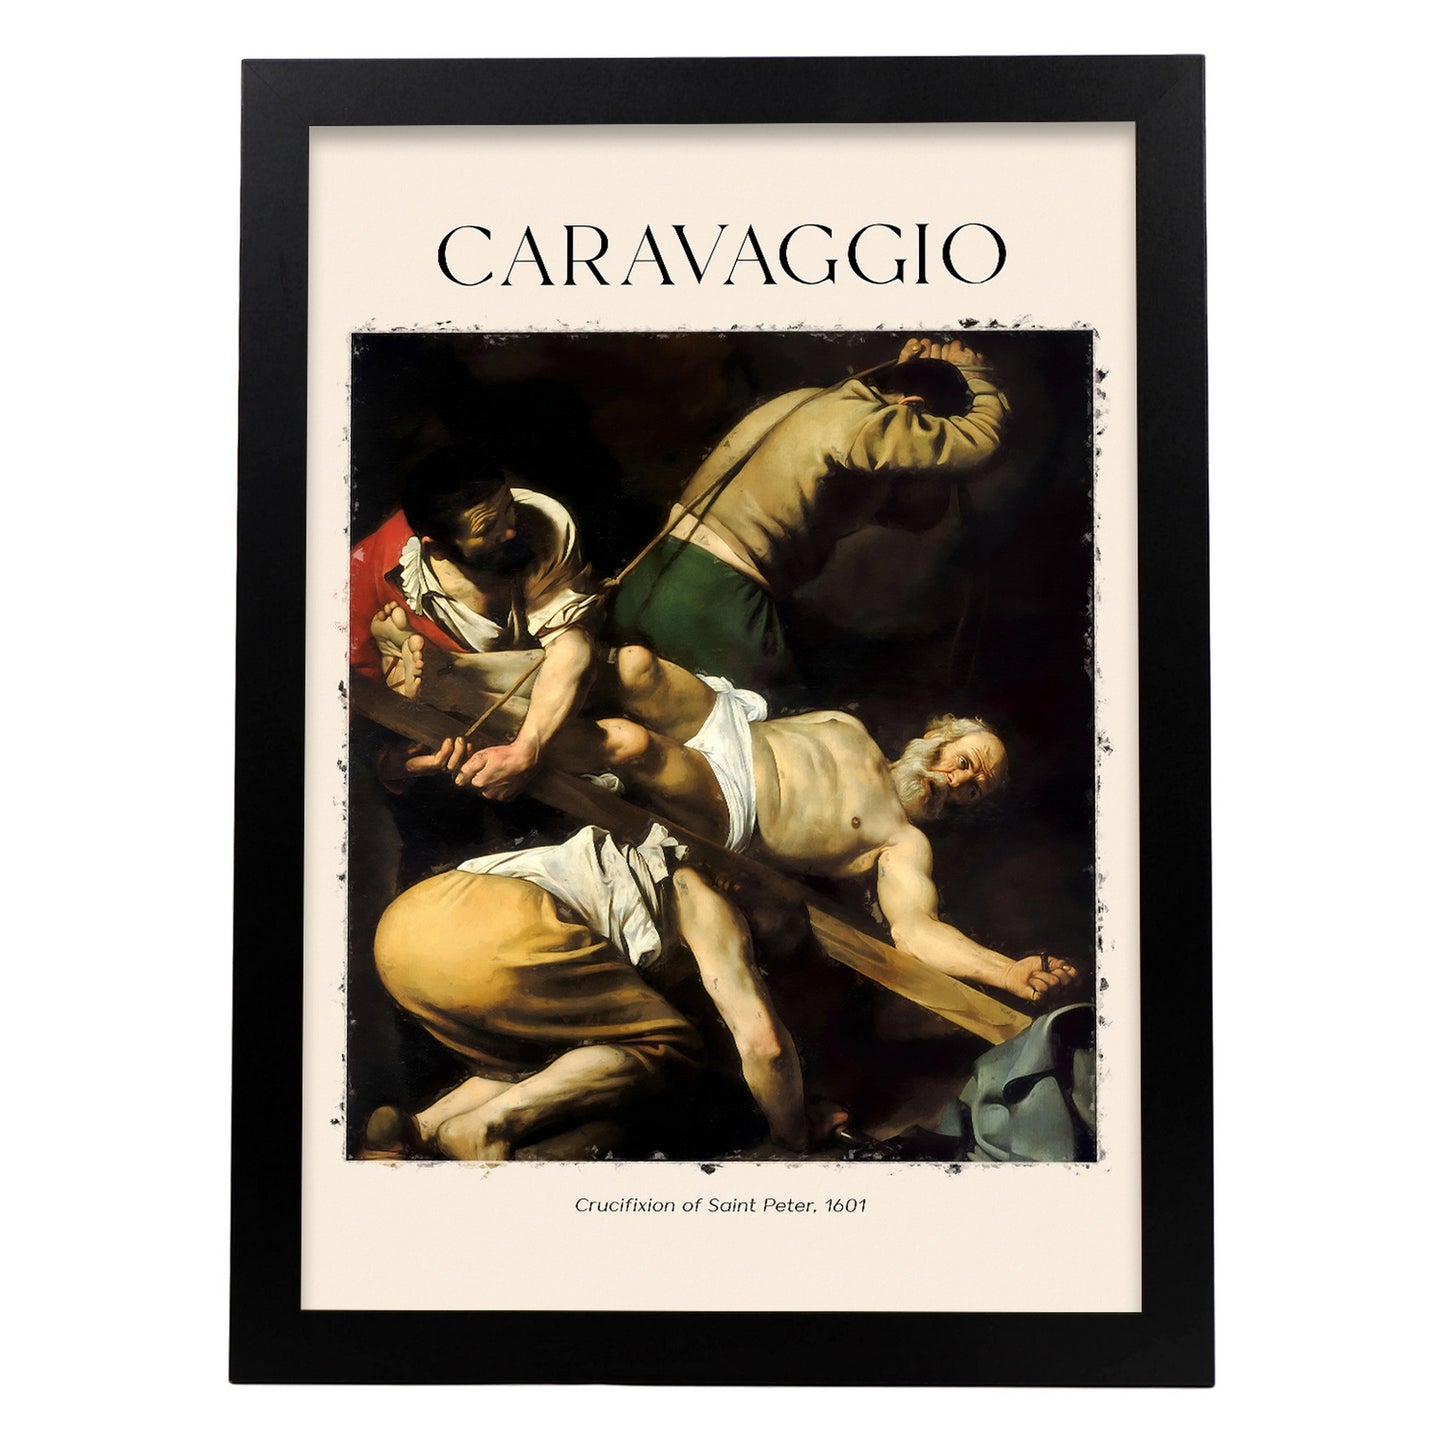 Lámina de Crucifixión de San Pedro inspirada en Caravaggio